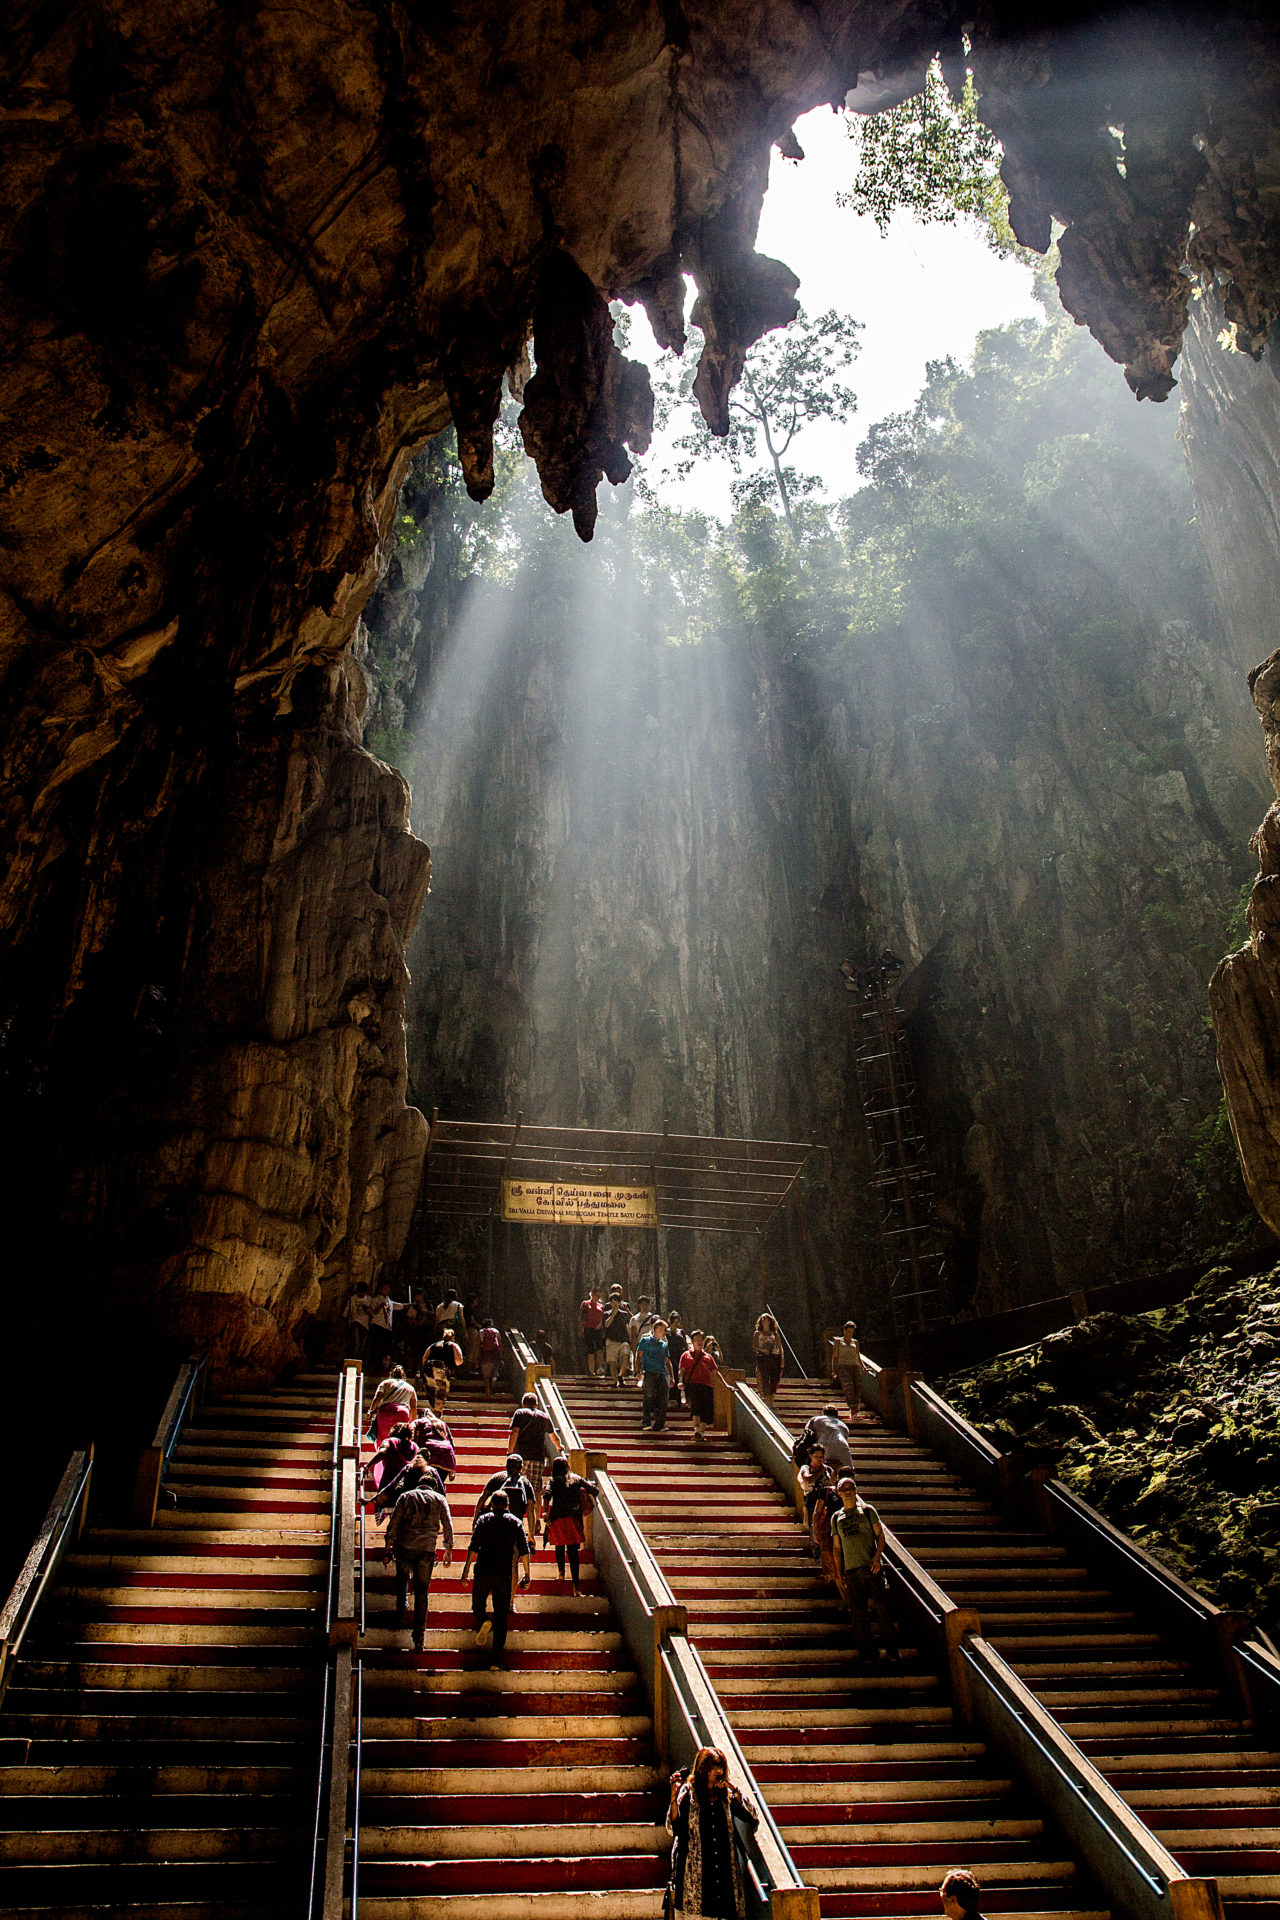 Inside Batu Caves.